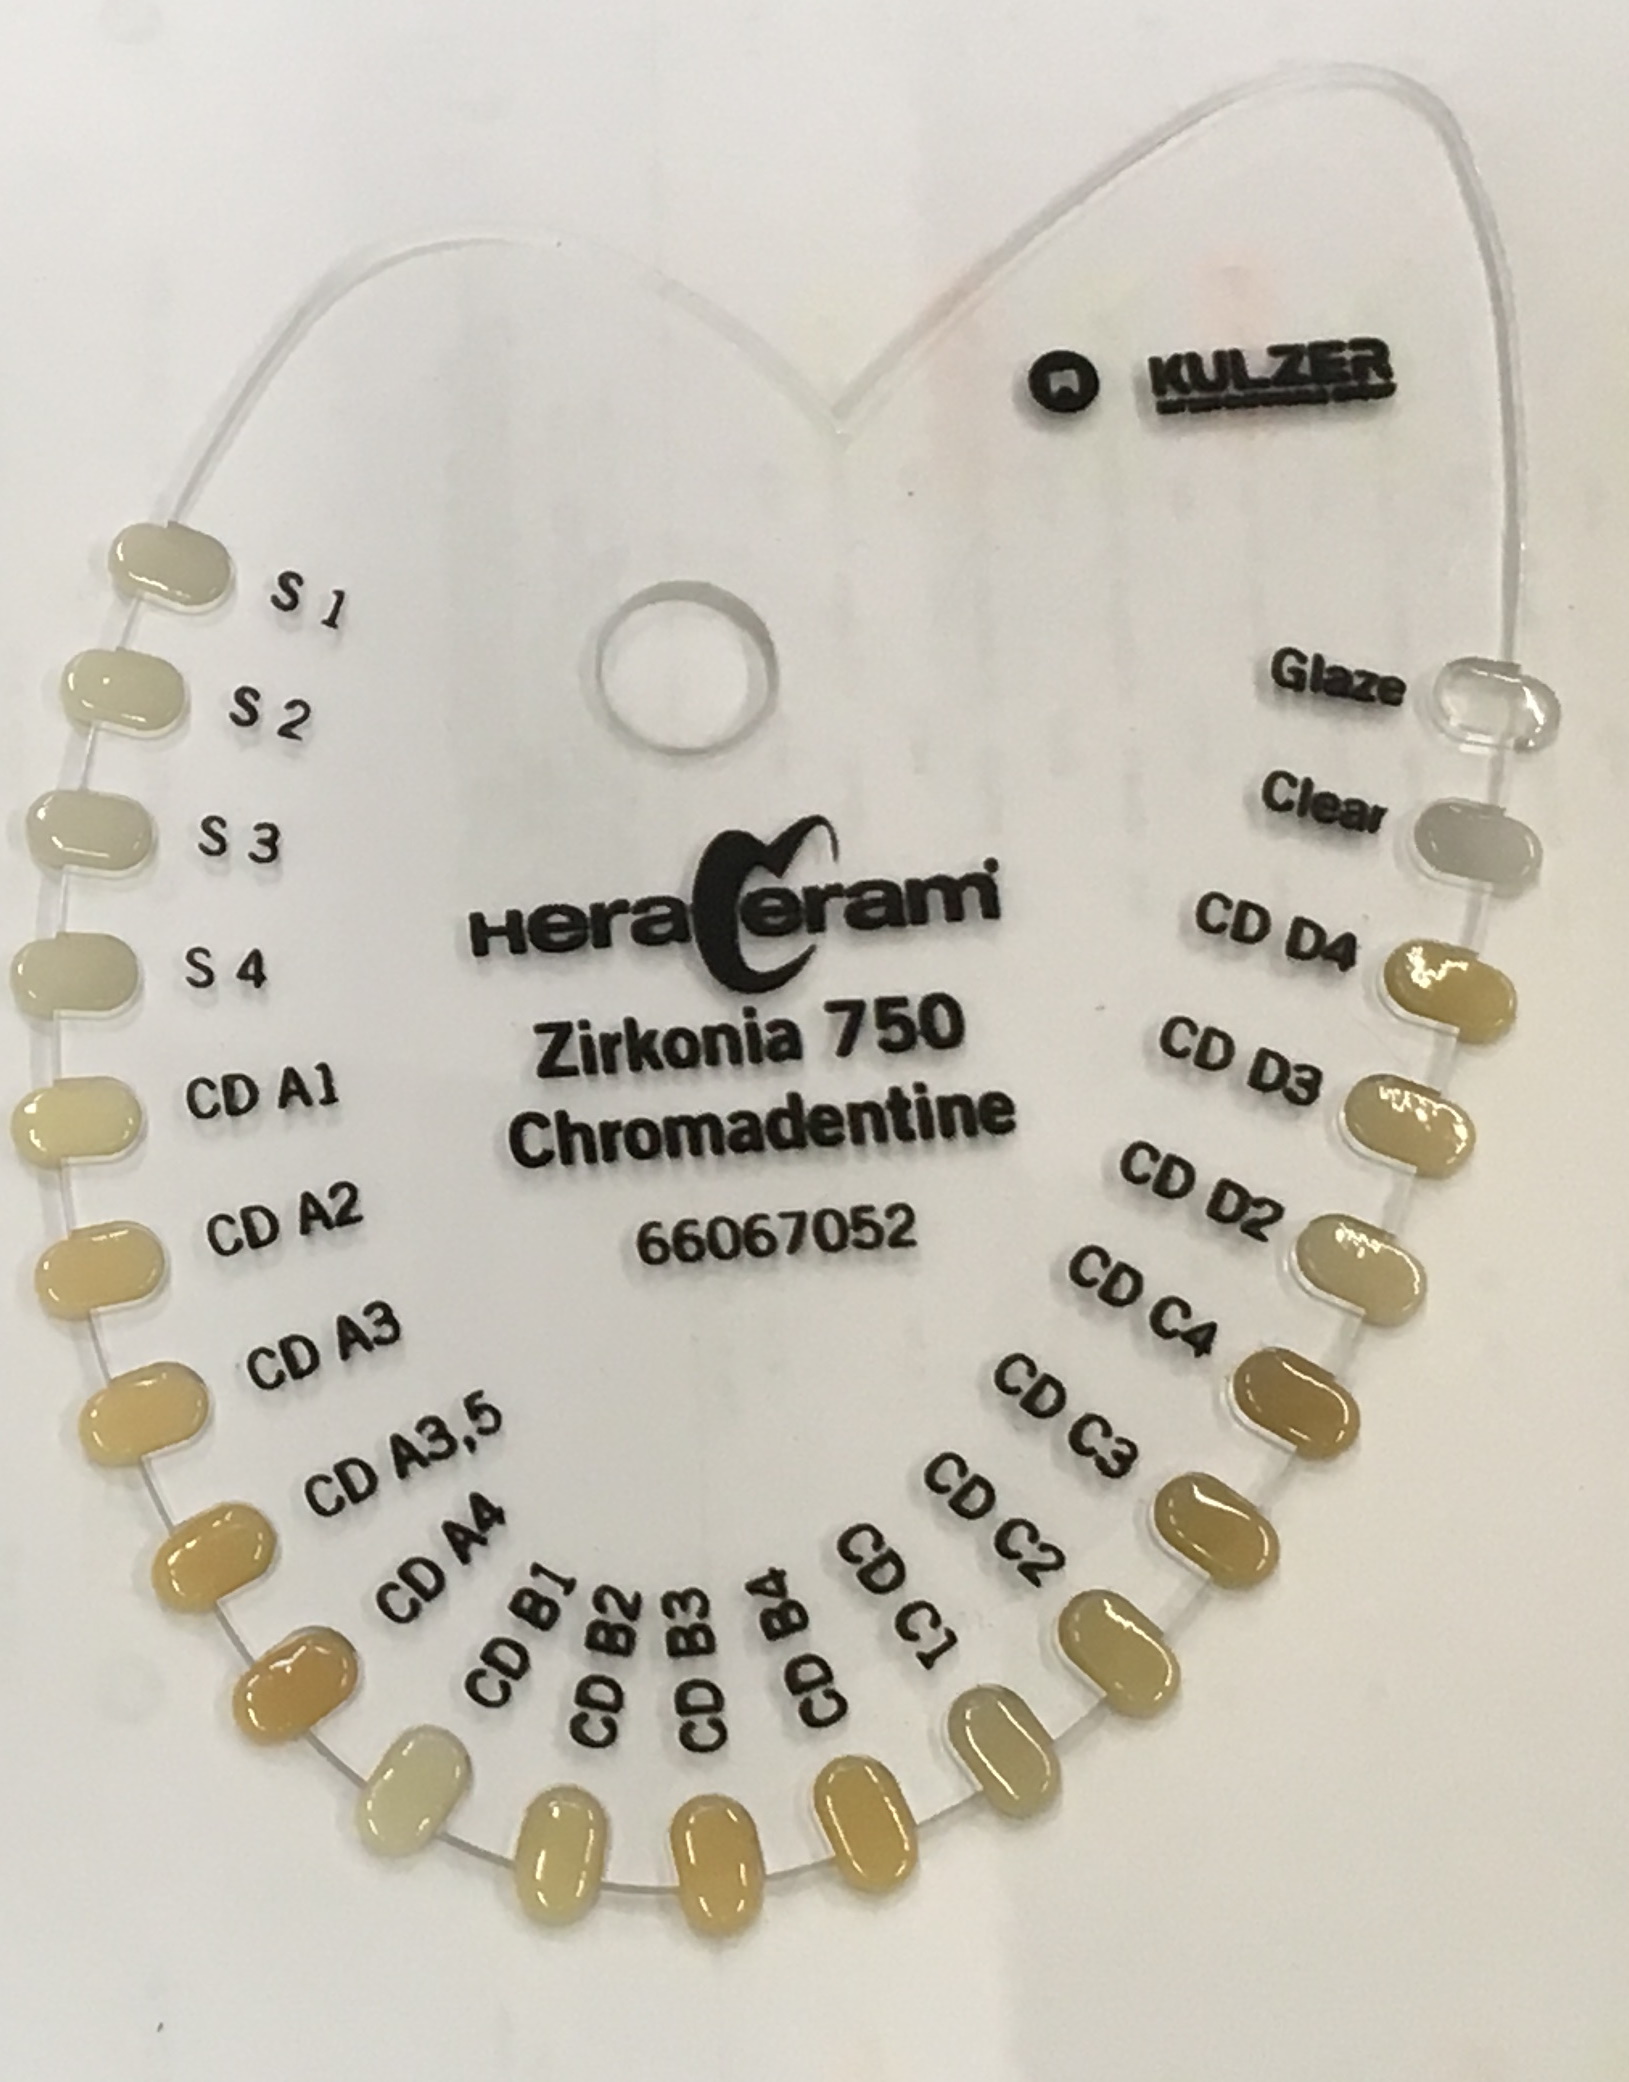 Хромадентин HeraCeram Zirkonia 750 Chromadentine CDD3, 20 г